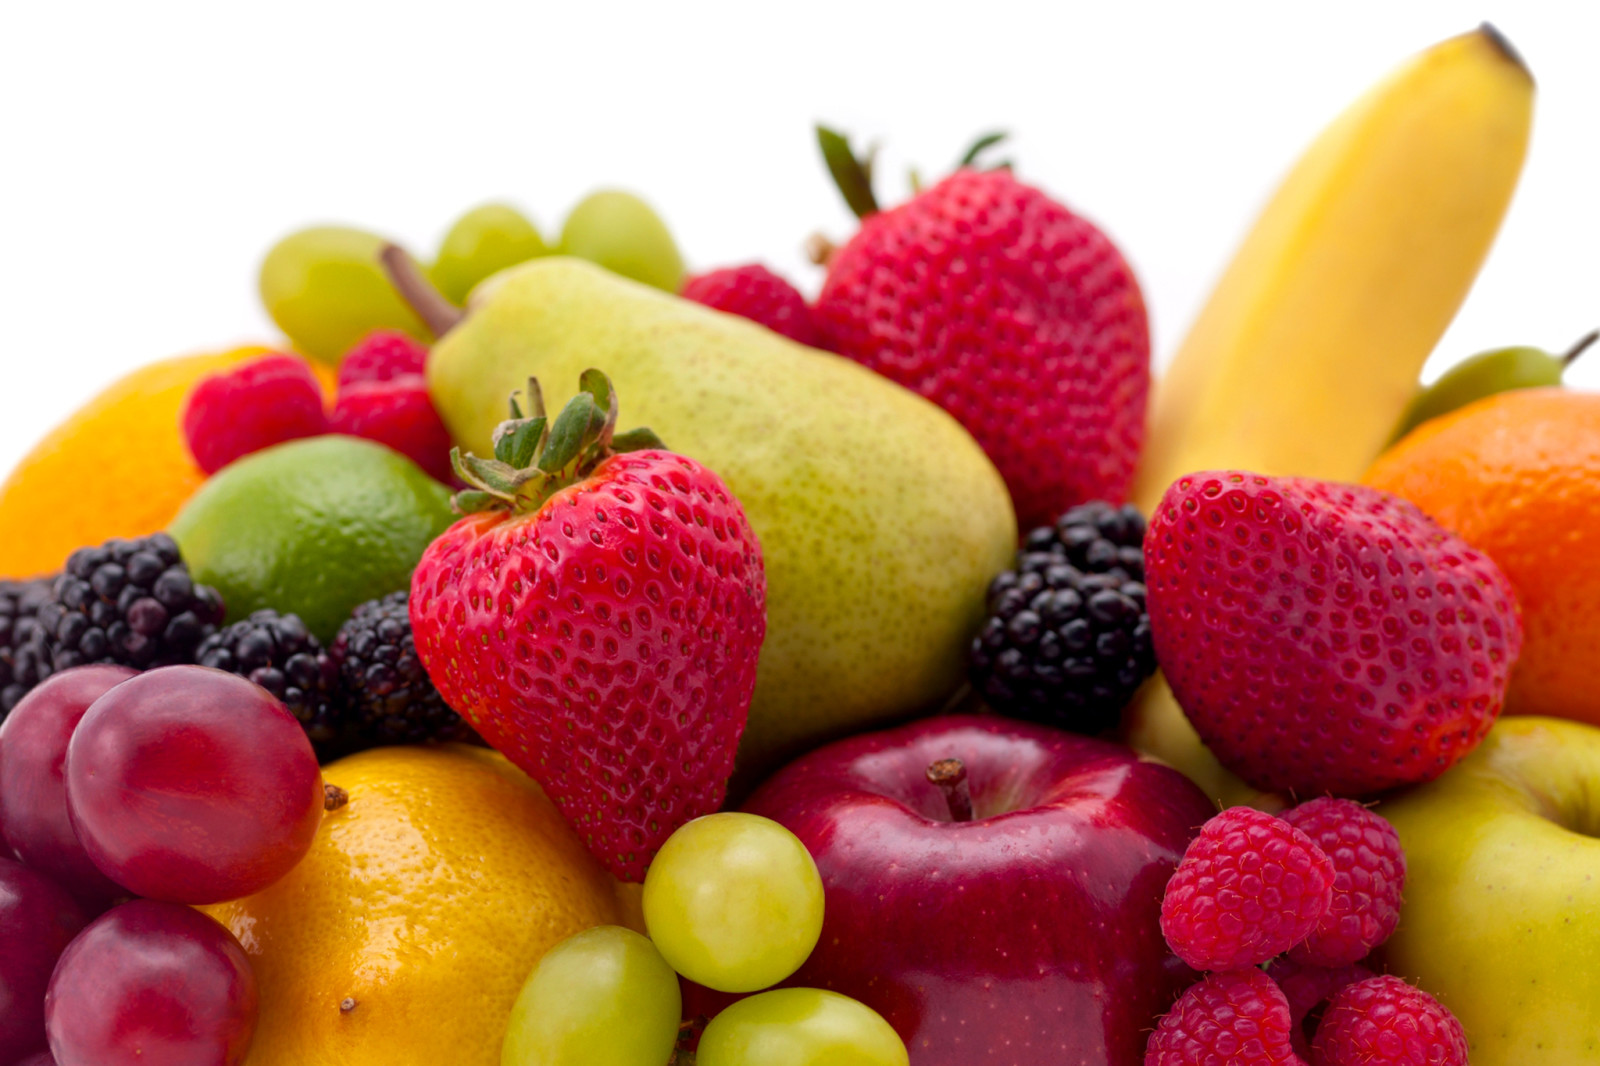 浆果, 覆盆子, 草莓, 苹果, 水果, 葡萄, 梨, 香蕉